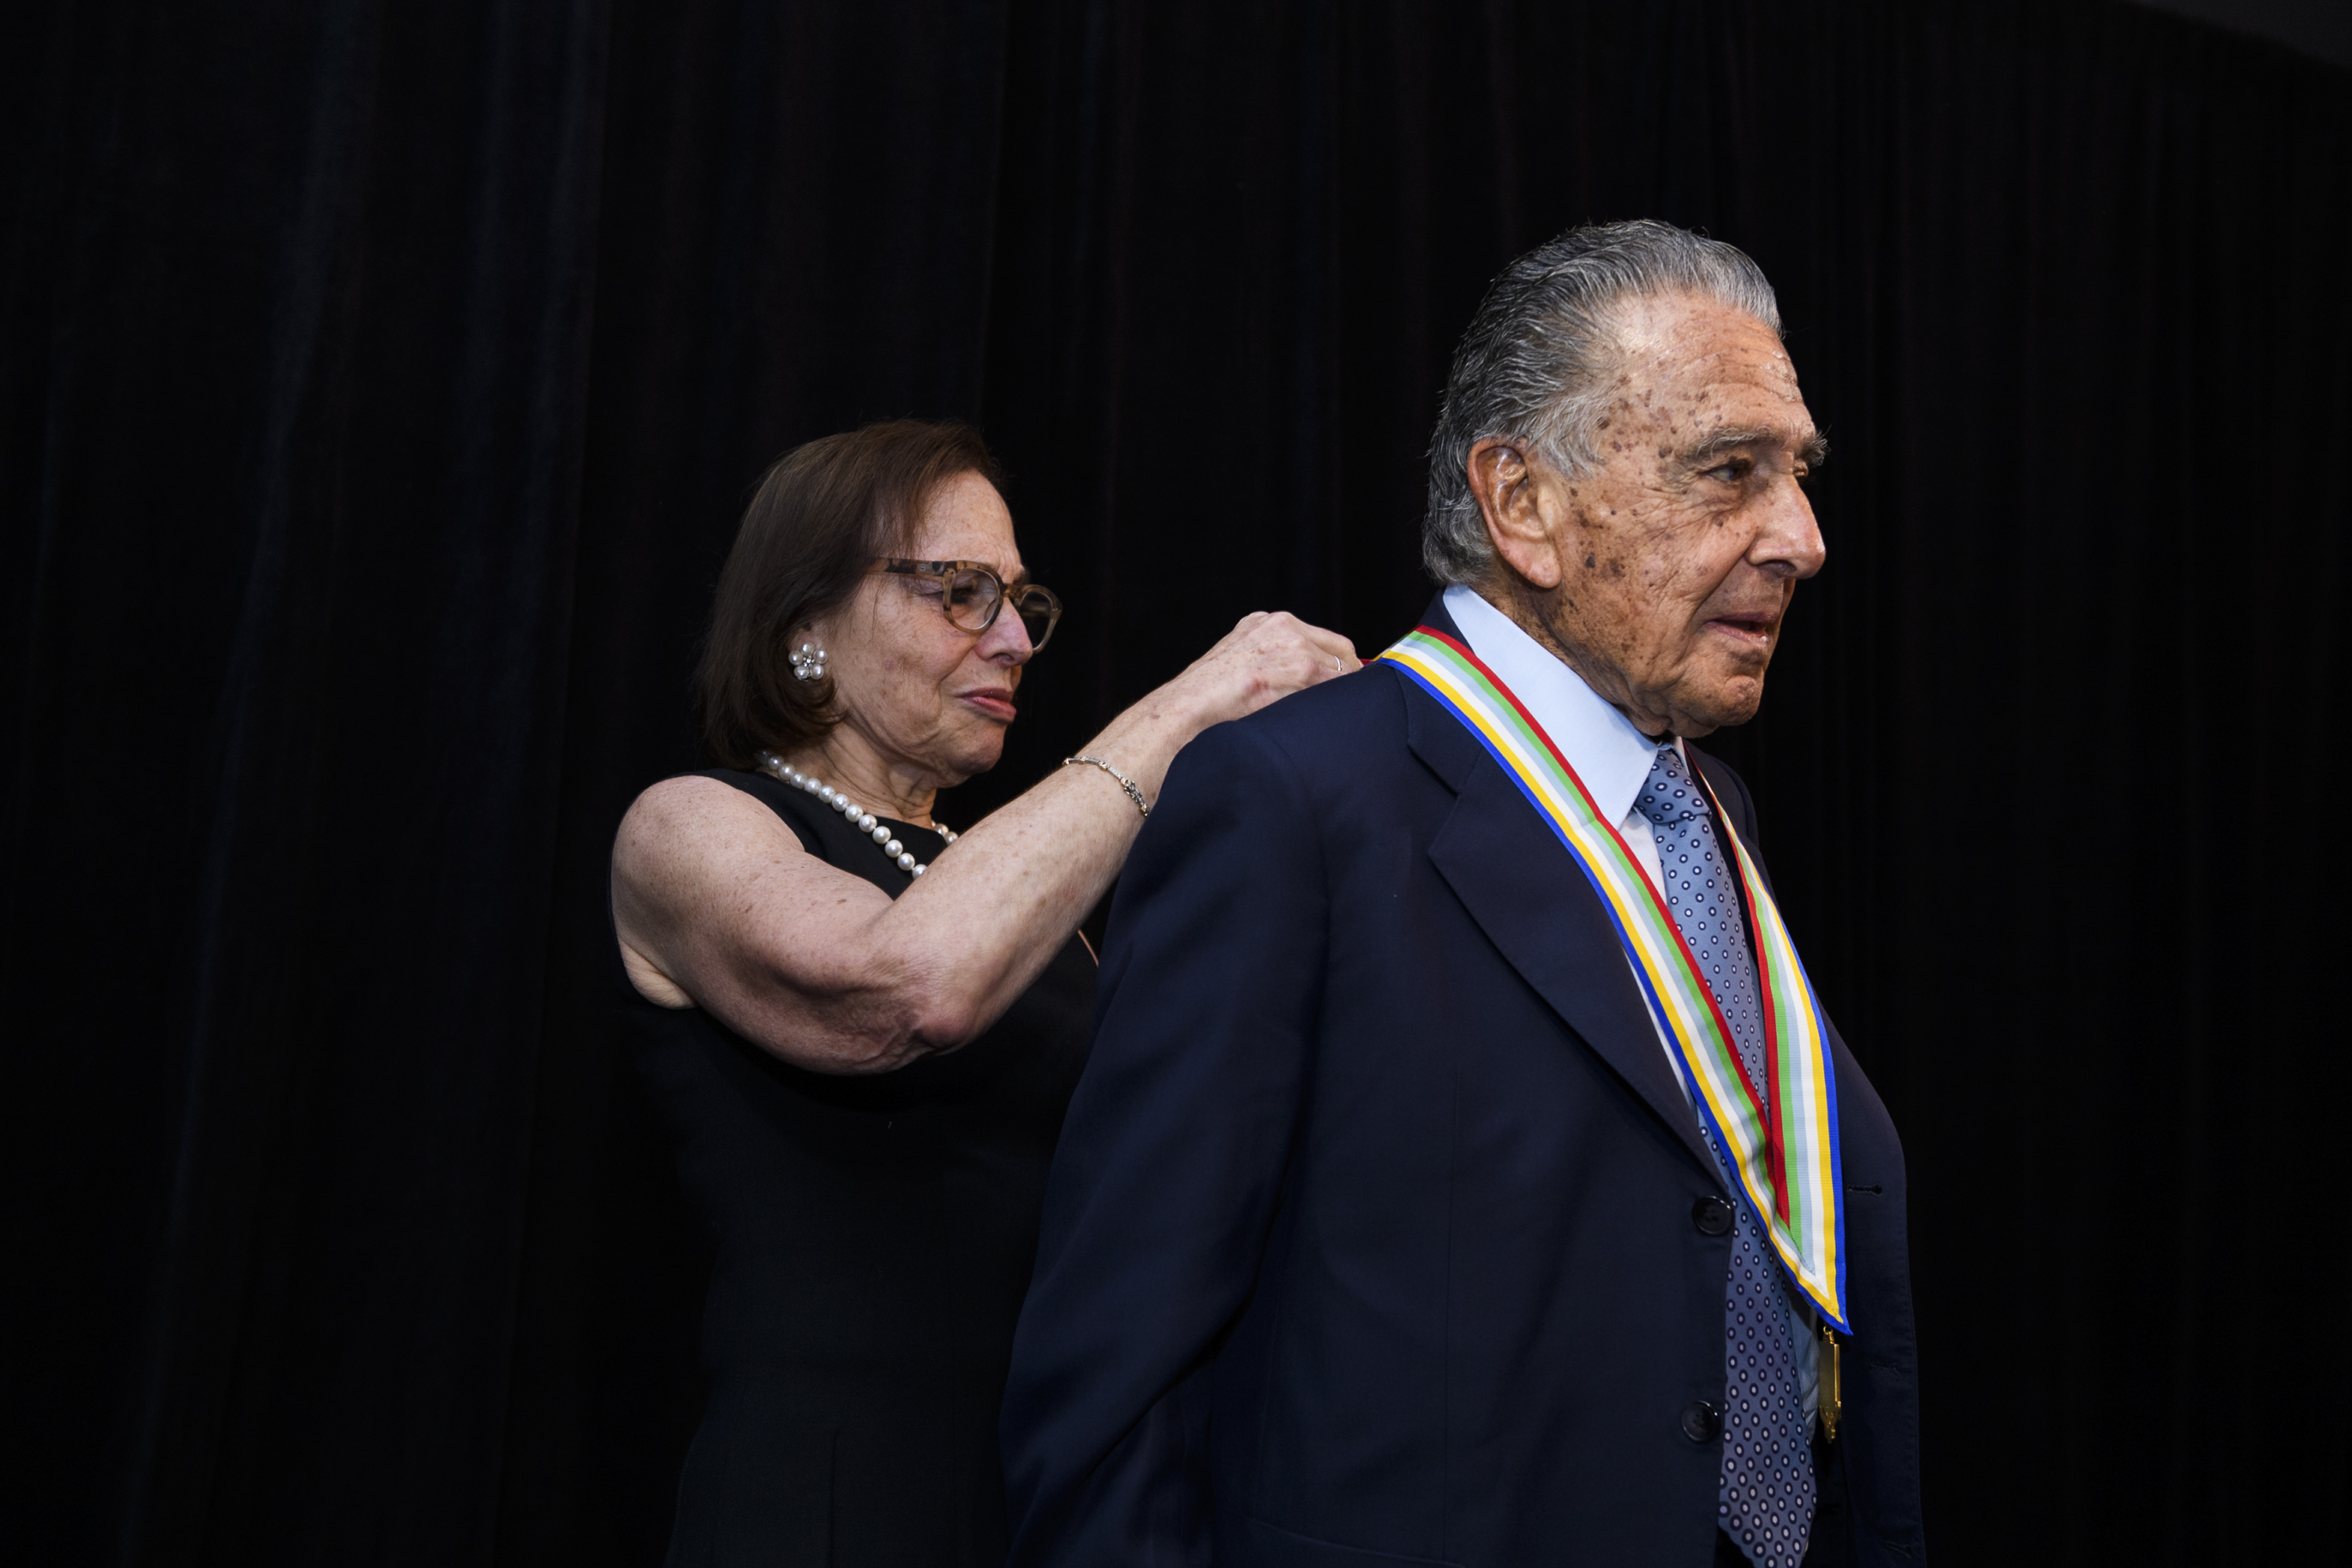 Eduardo Eurnekian, presidente y fundador de Corporación América, recibe la Medalla de Oro de la Americas Society de manos de Susan L. Segal, CEO de la institución (Paula Abreu Pita/Roey Yohai Photography)